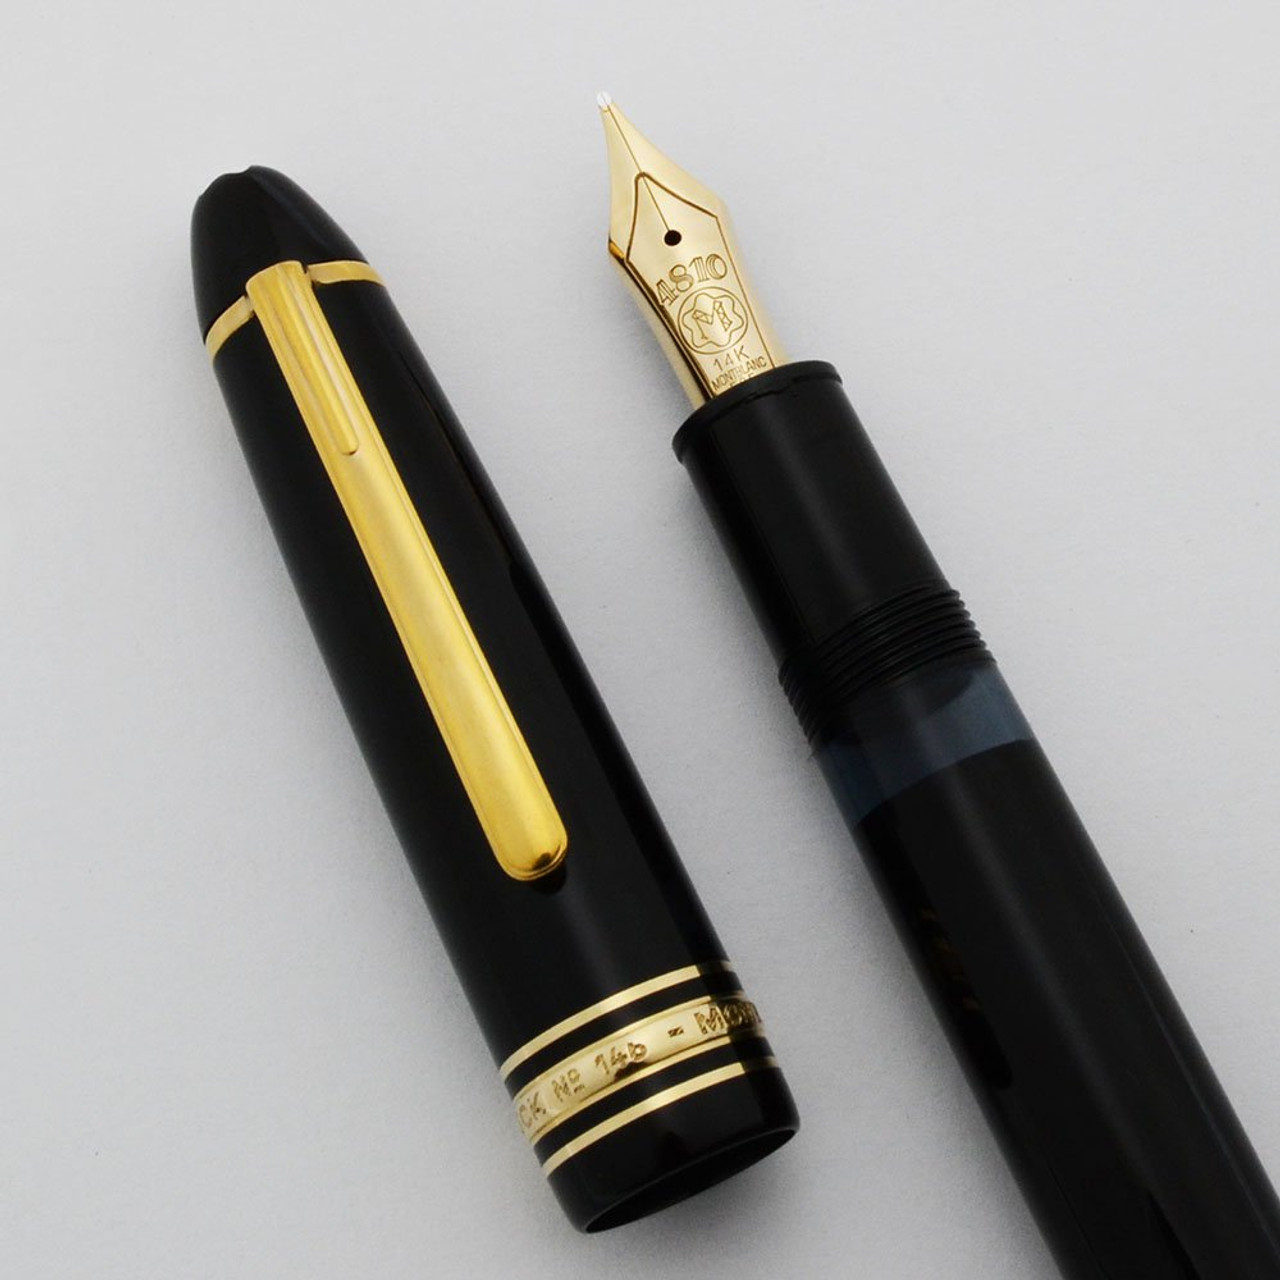 Montblanc Meisterstuck 146 Fountain Pen (1975-83) - Black w Gold Trim, Piston Fill, 14k Medium Nib (Excellent +, Works Well)